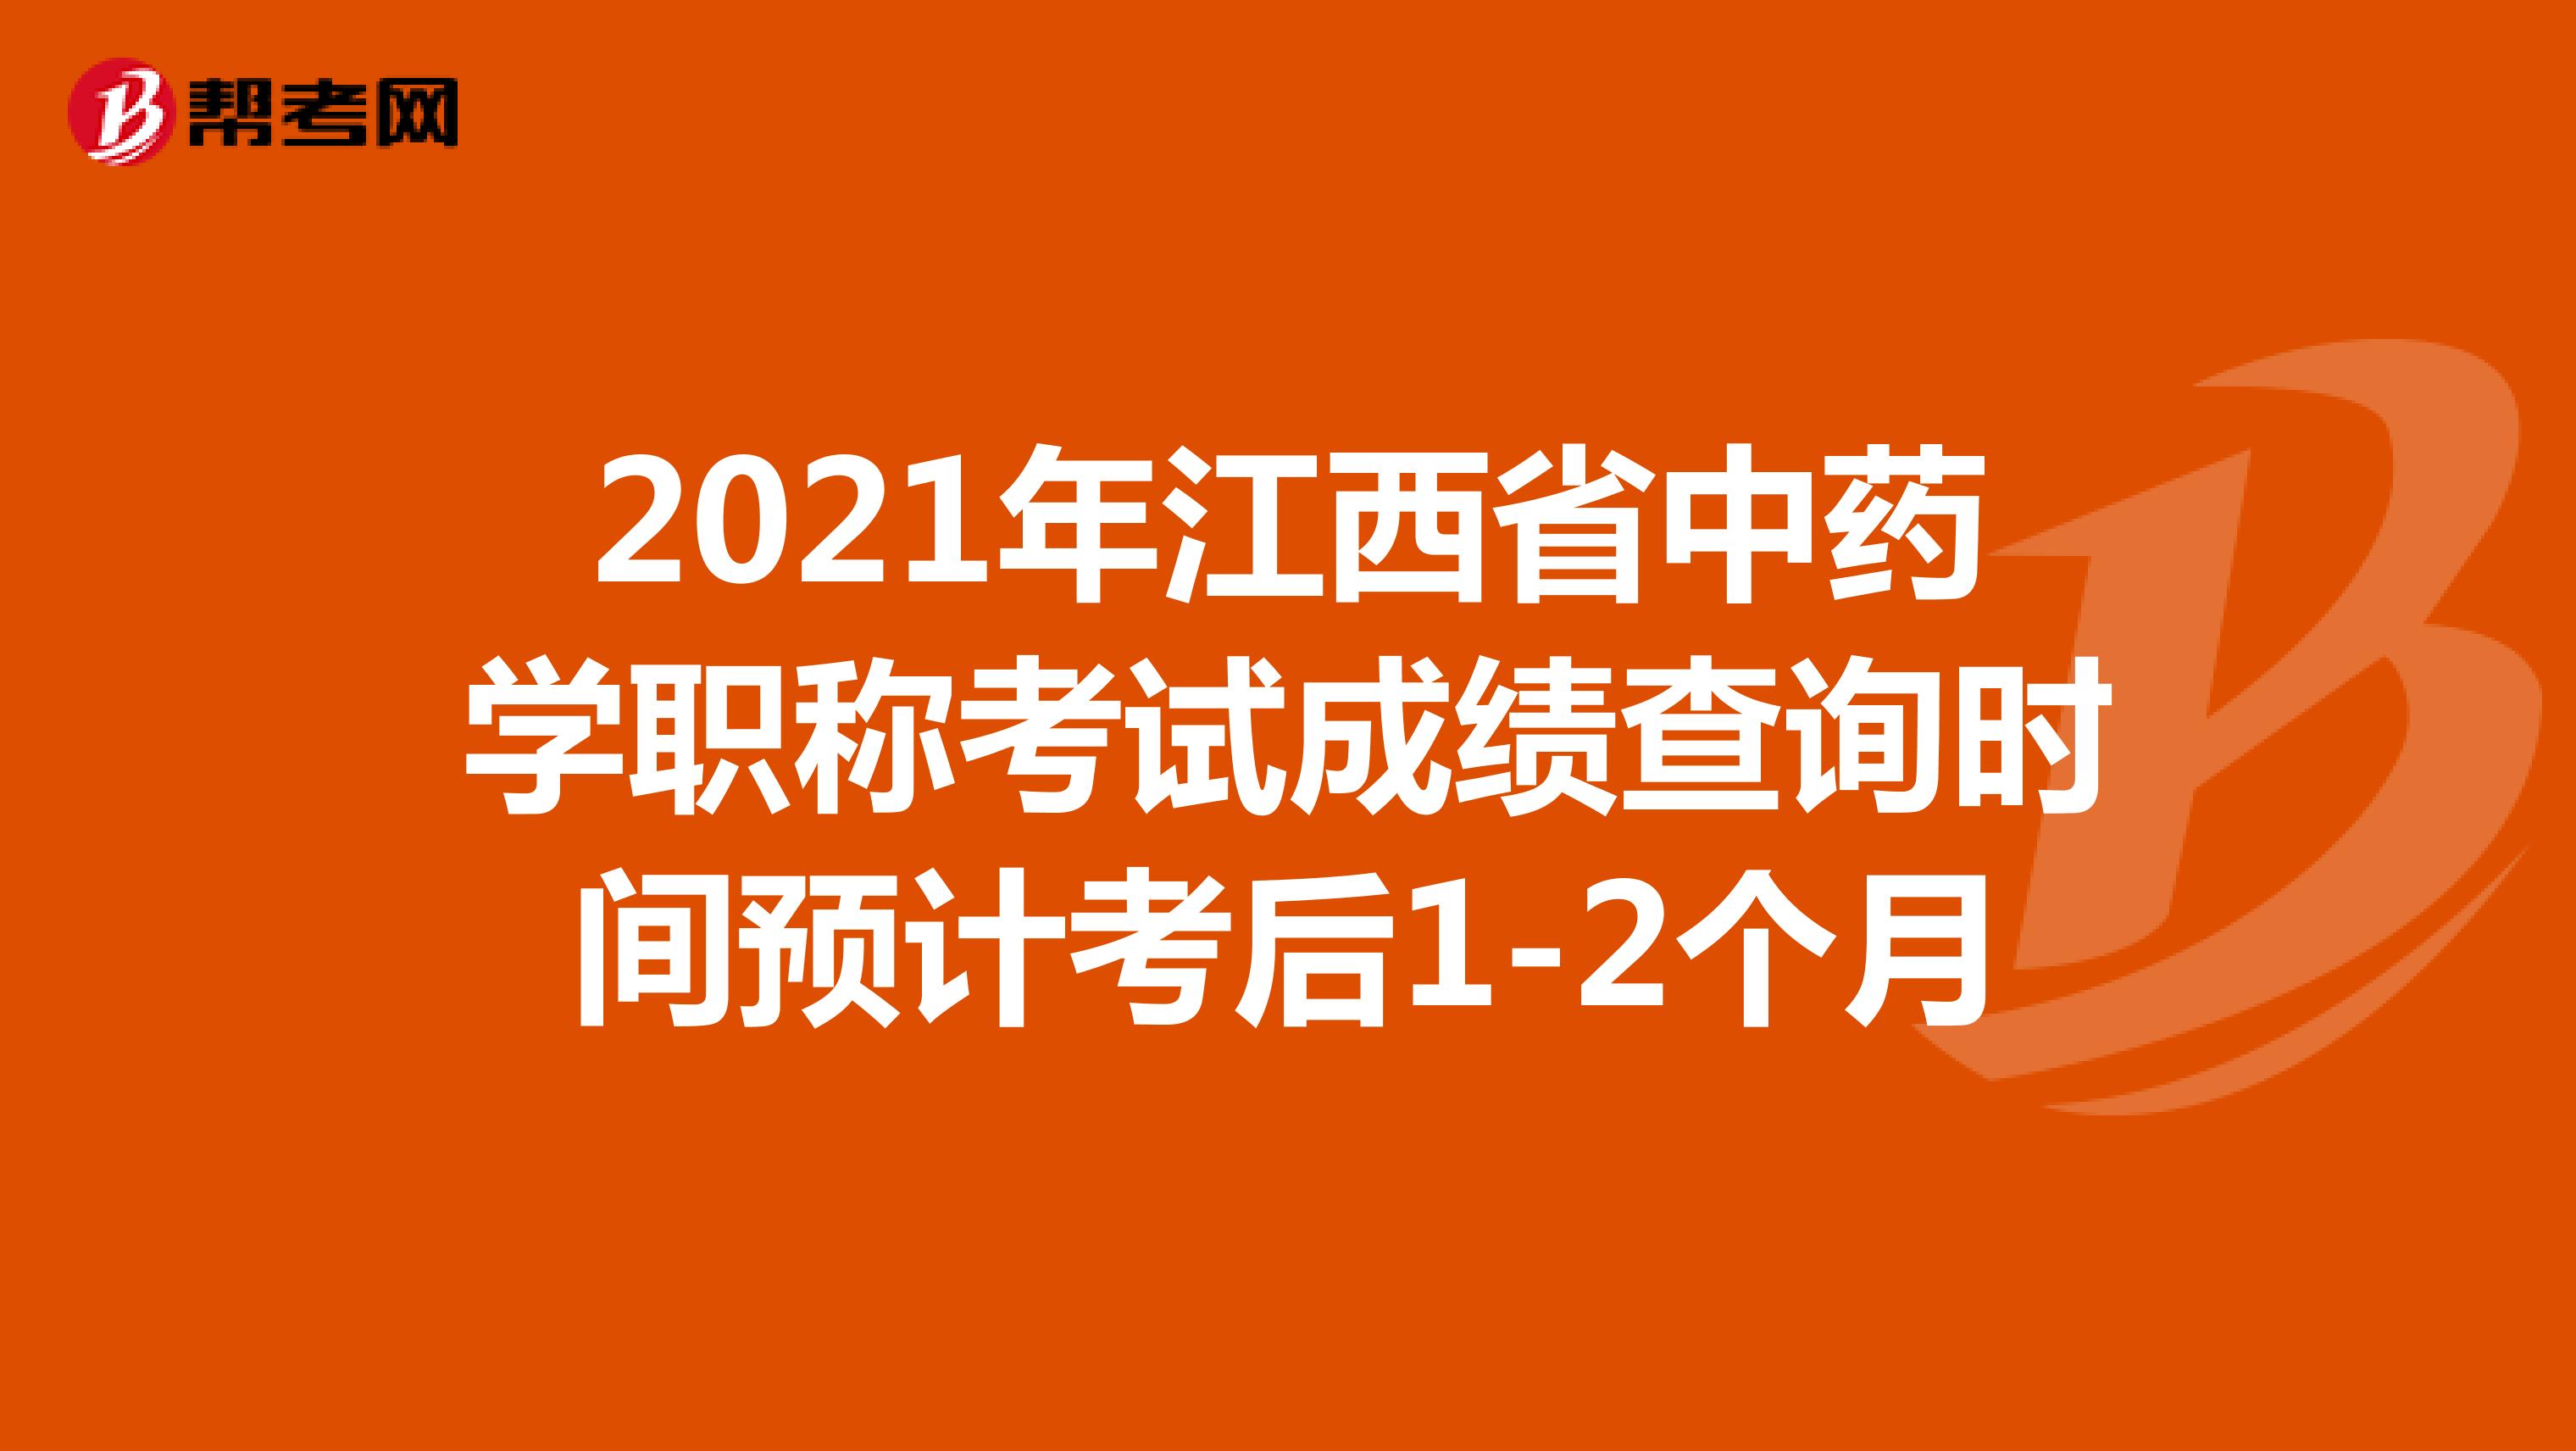 2021年江西省中药学职称考试成绩查询时间预计考后1-2个月